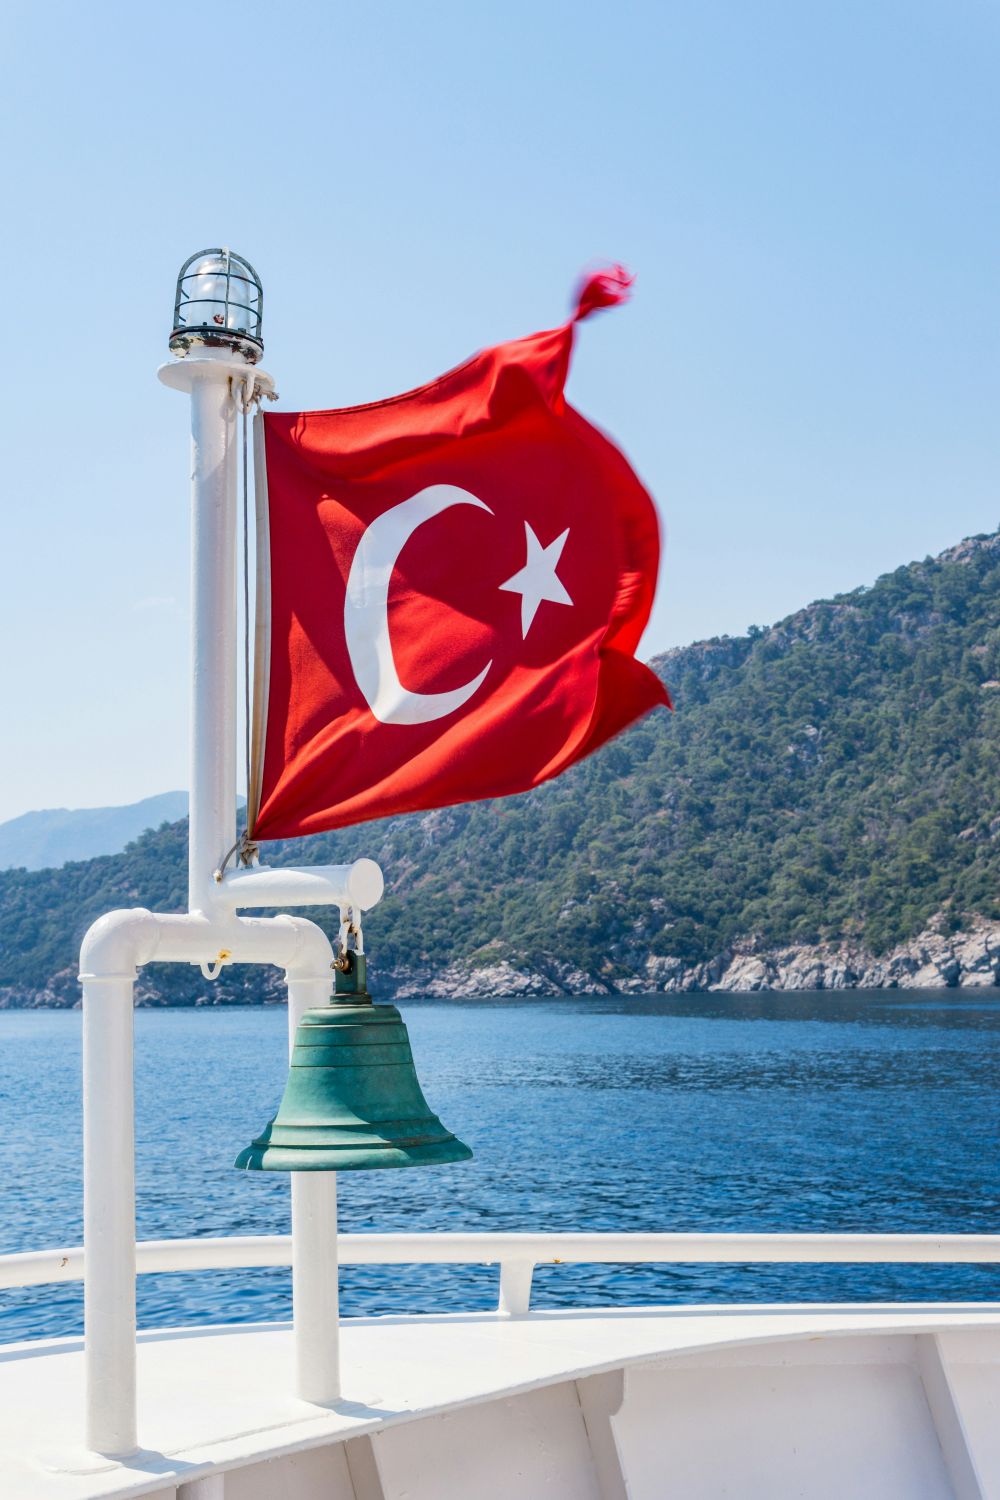 hur mycket kostar en resa till turkiet